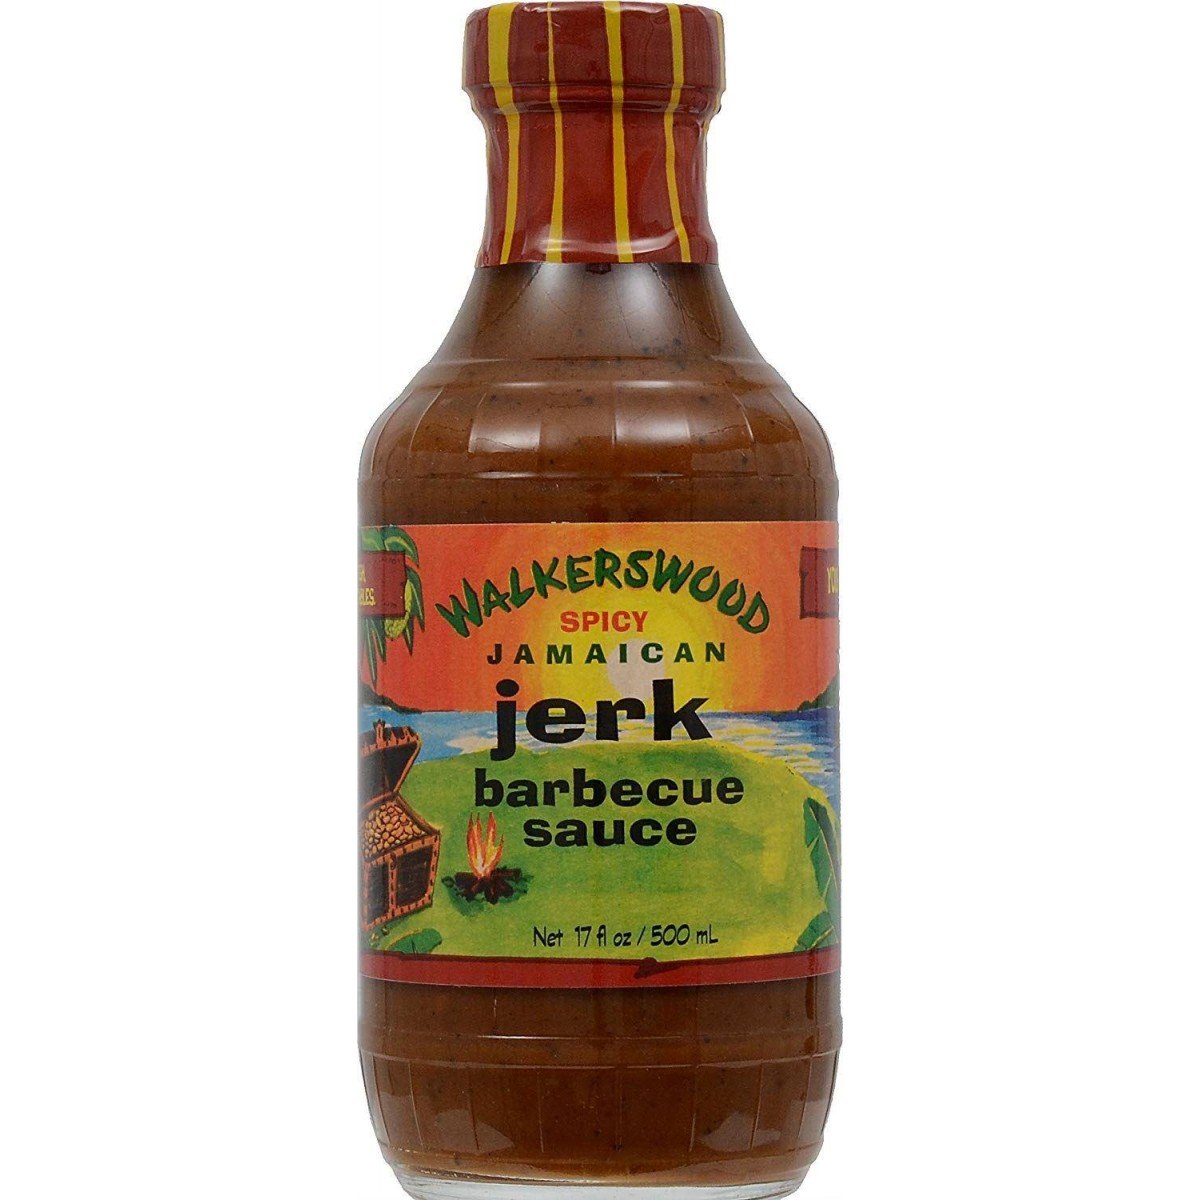 Walkerswood Spicy Jamaican Jerk Barbecue Sauce 500ml ...